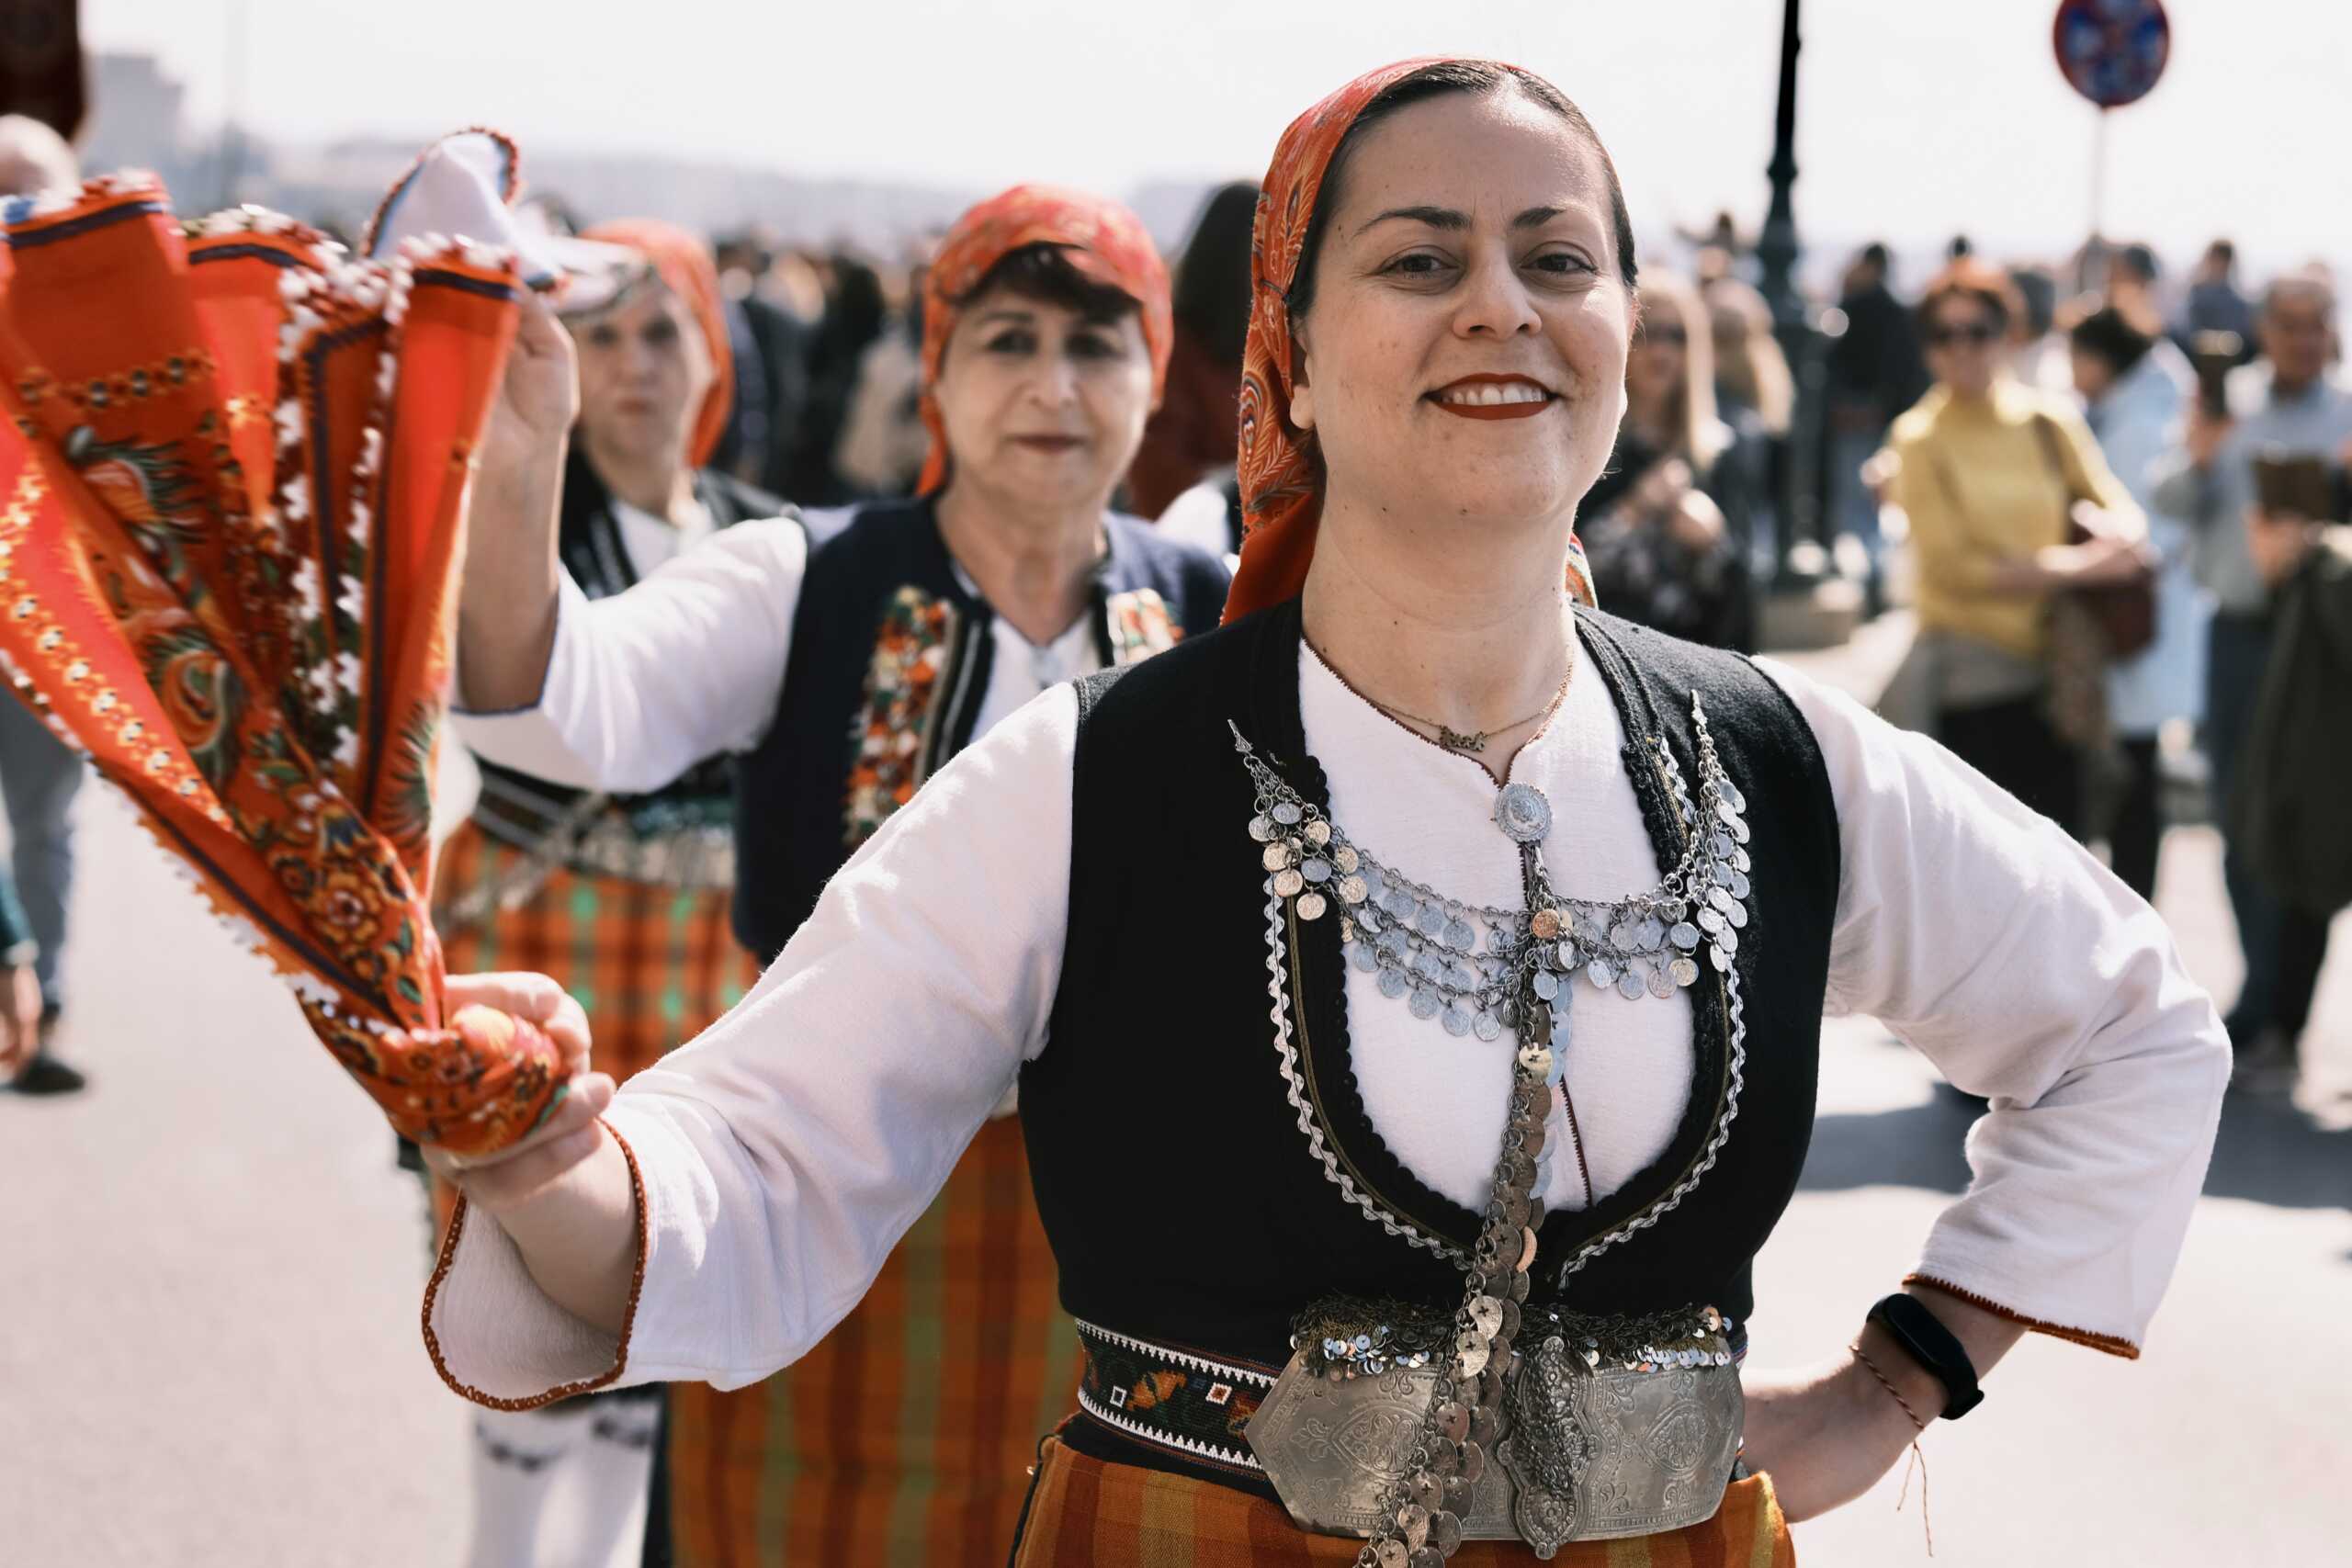 Θεσσαλονίκη: «Σείστηκε» το κέντρο από τους χιλιάδες κουδουνοφόρους που «εξάγνισαν» την πόλη